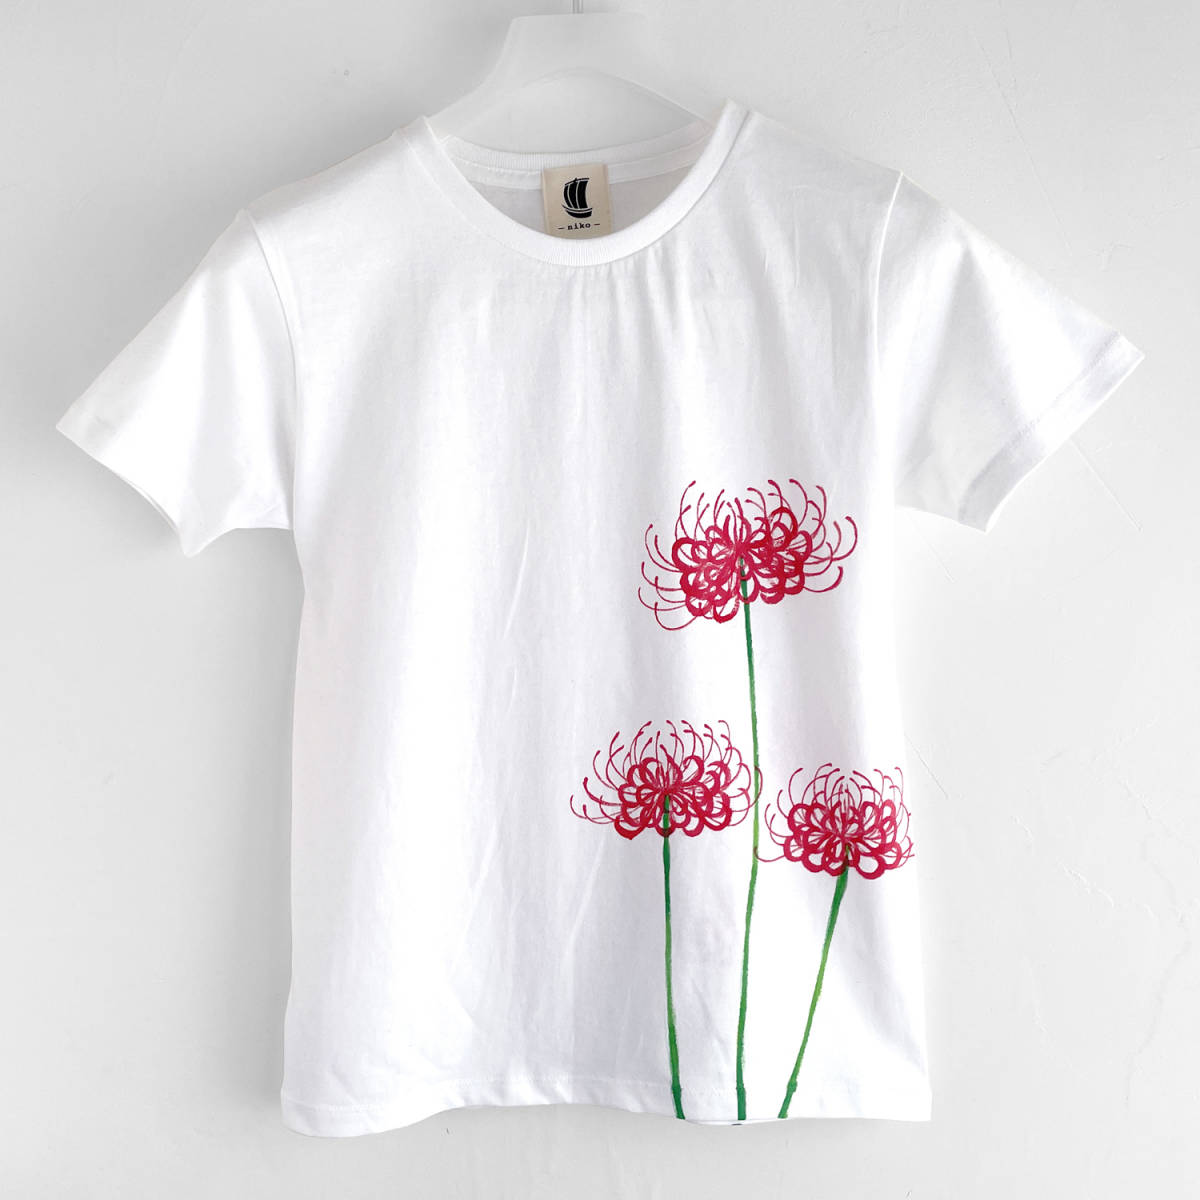 여성용 티셔츠, L사이즈, 하얀색, 레드 스파이더 릴리 패턴 티셔츠, 수공, 핸드페인팅 티셔츠, 일본식 디자인, 꽃무늬, 가을 겨울, L사이즈, 목이 둥글게 파인 옷, 무늬가 있는